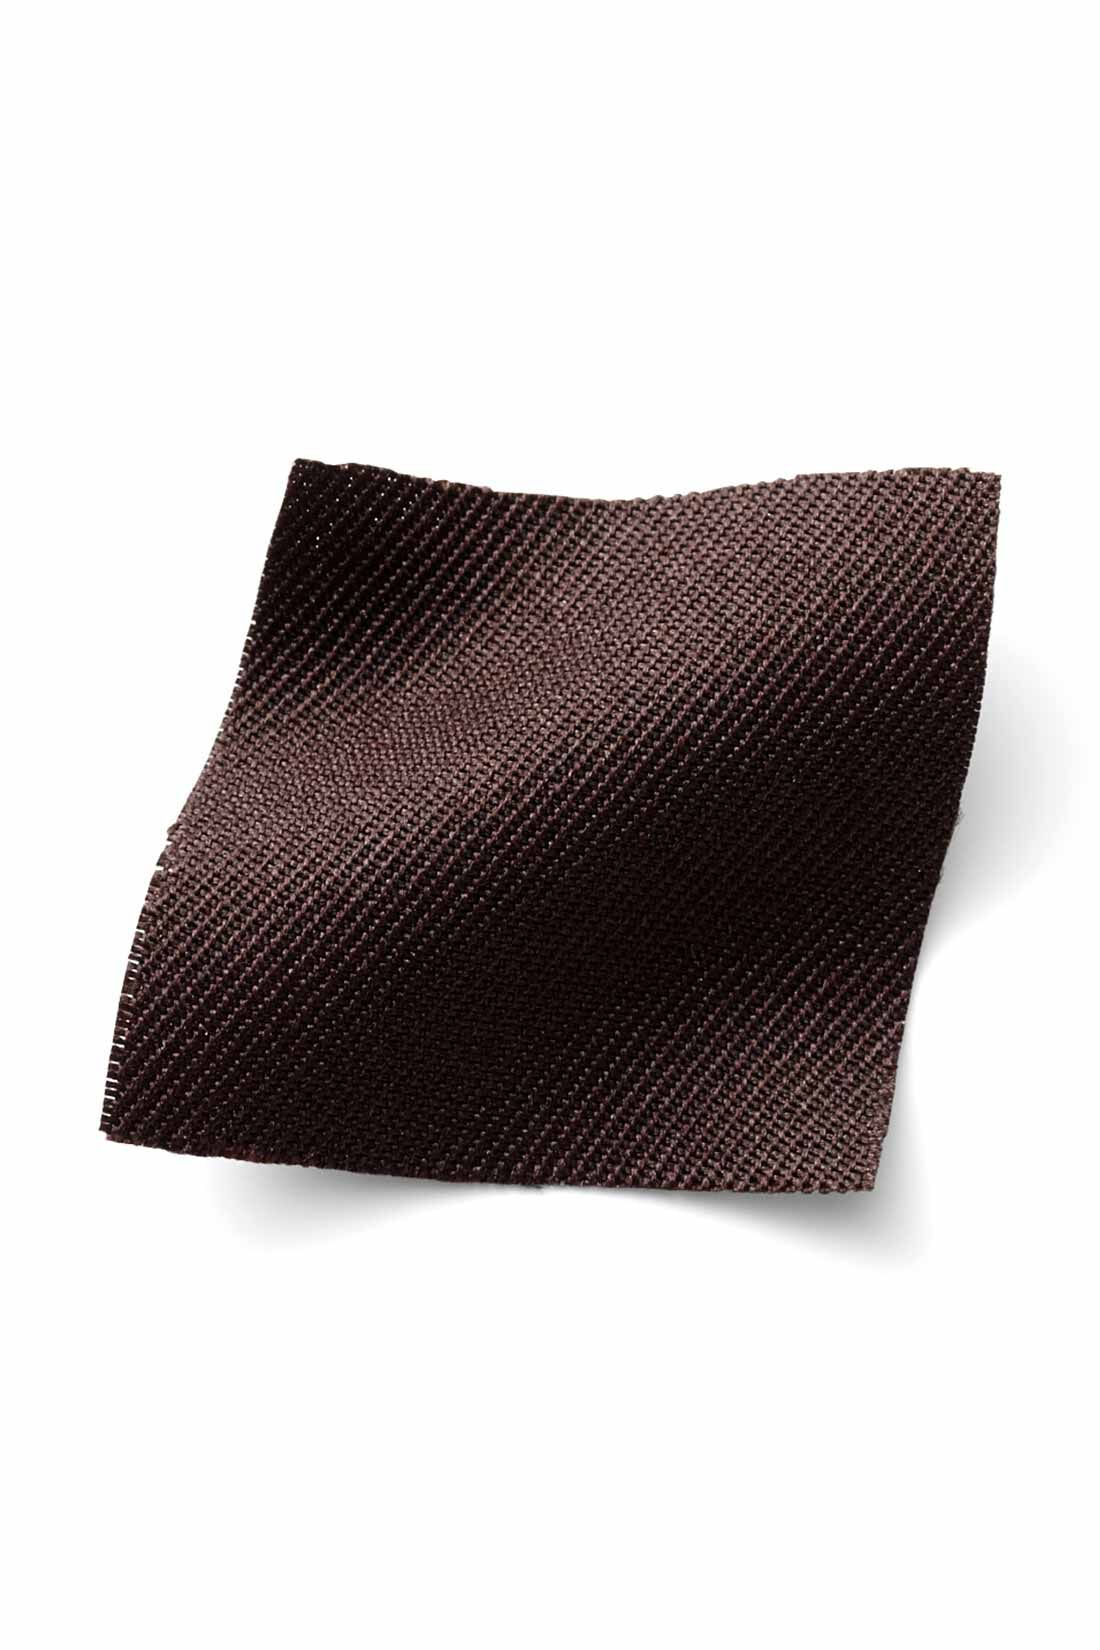 IEDIT[イディット]　着まわし広がる 2-WAY仕様がうれしい大人シルエットのジャンパースカート〈ブラック〉|季節を問わずはきやすい、ほどよい厚みの布はく素材。